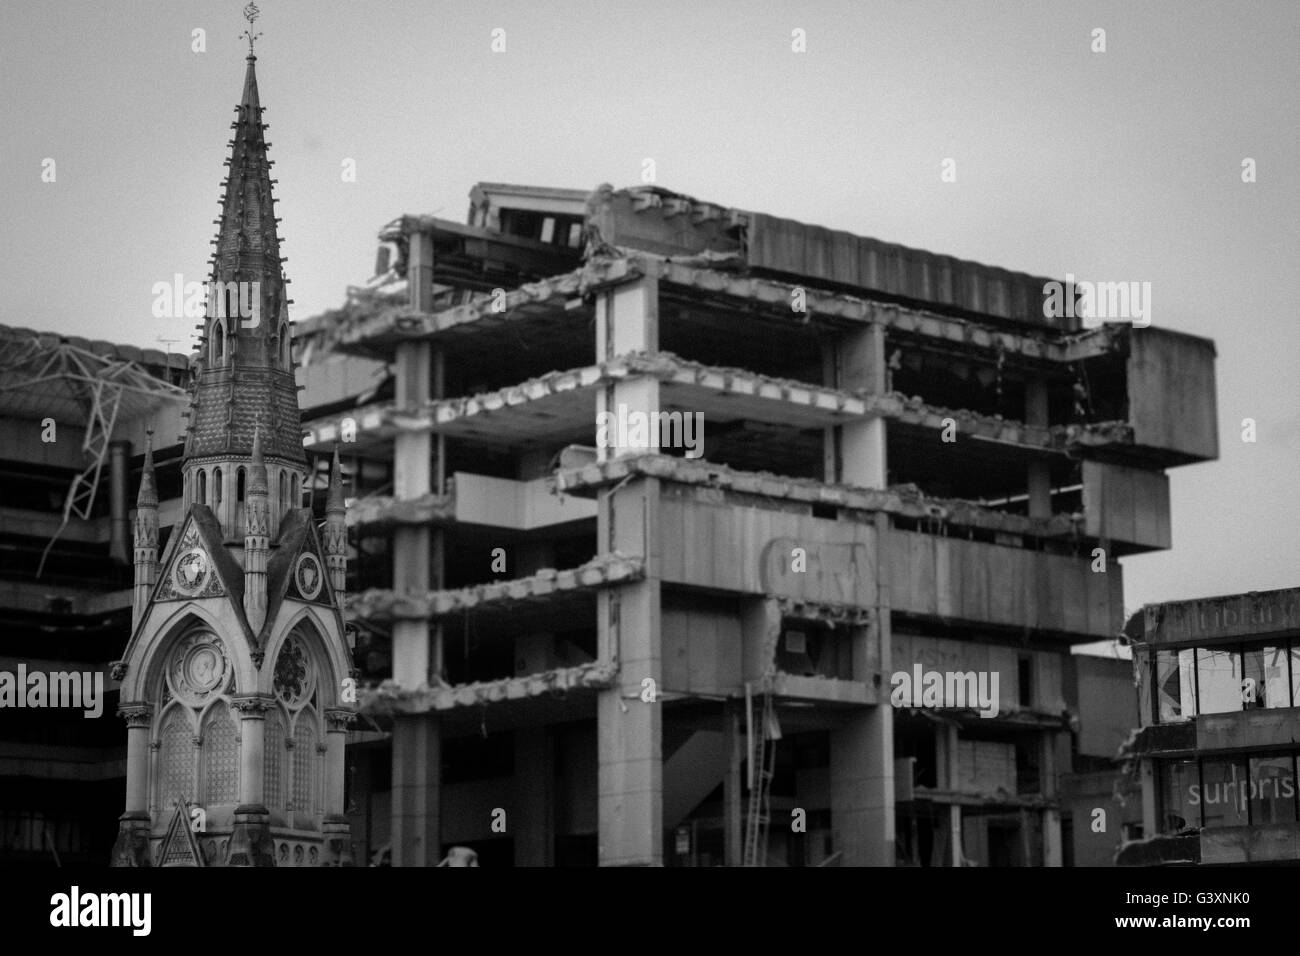 Démolition de jungle de béton avec clocher d'église debout fier à Birmingham, Royaume-Uni Banque D'Images